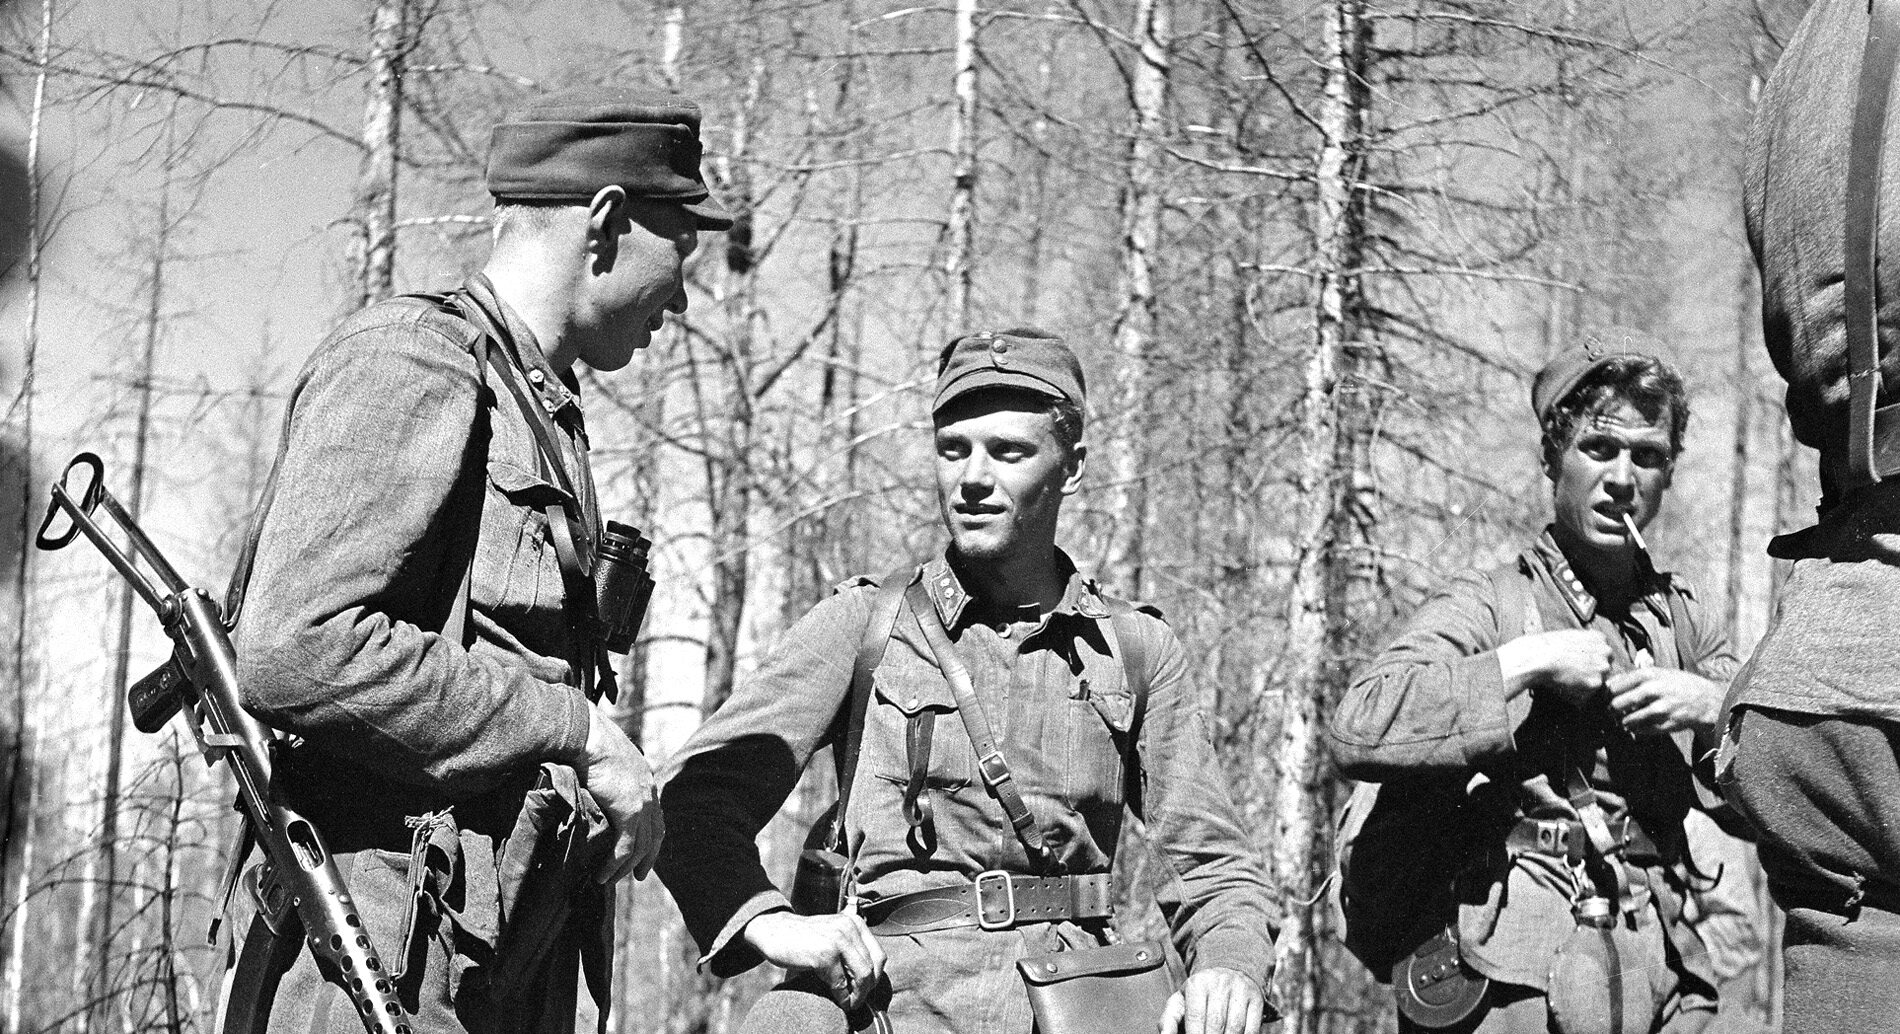 auri Törni (w środku) jako fiński porucznik, 27 lipca 1944 r.